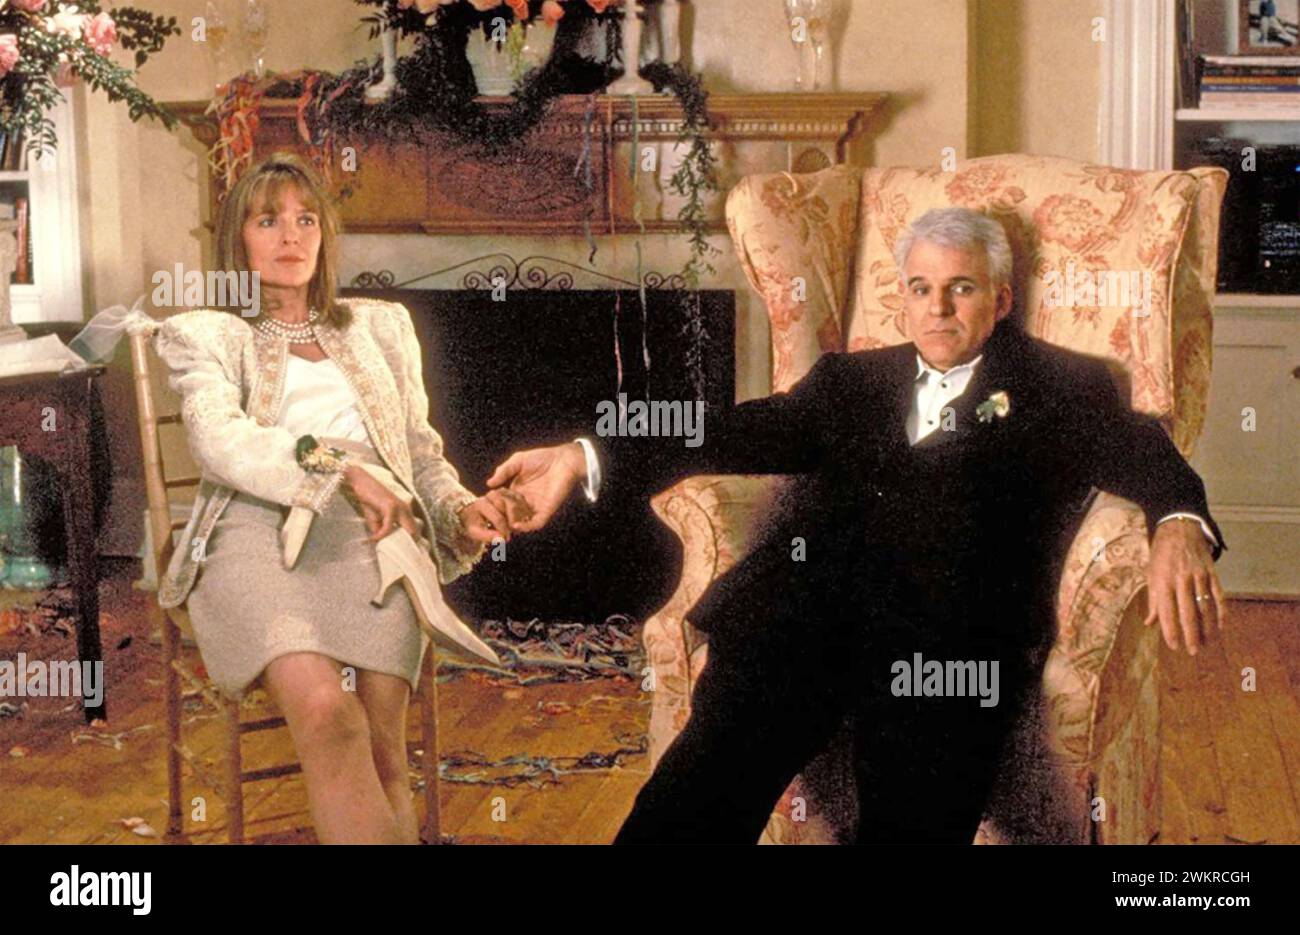 PÈRE DE LA MARIÉE 1991 Buena Vista Pictures distribution film avec Diane Keaton dans le rôle de Nina Banks et Steve Martin dans celui de son mari George Banque D'Images